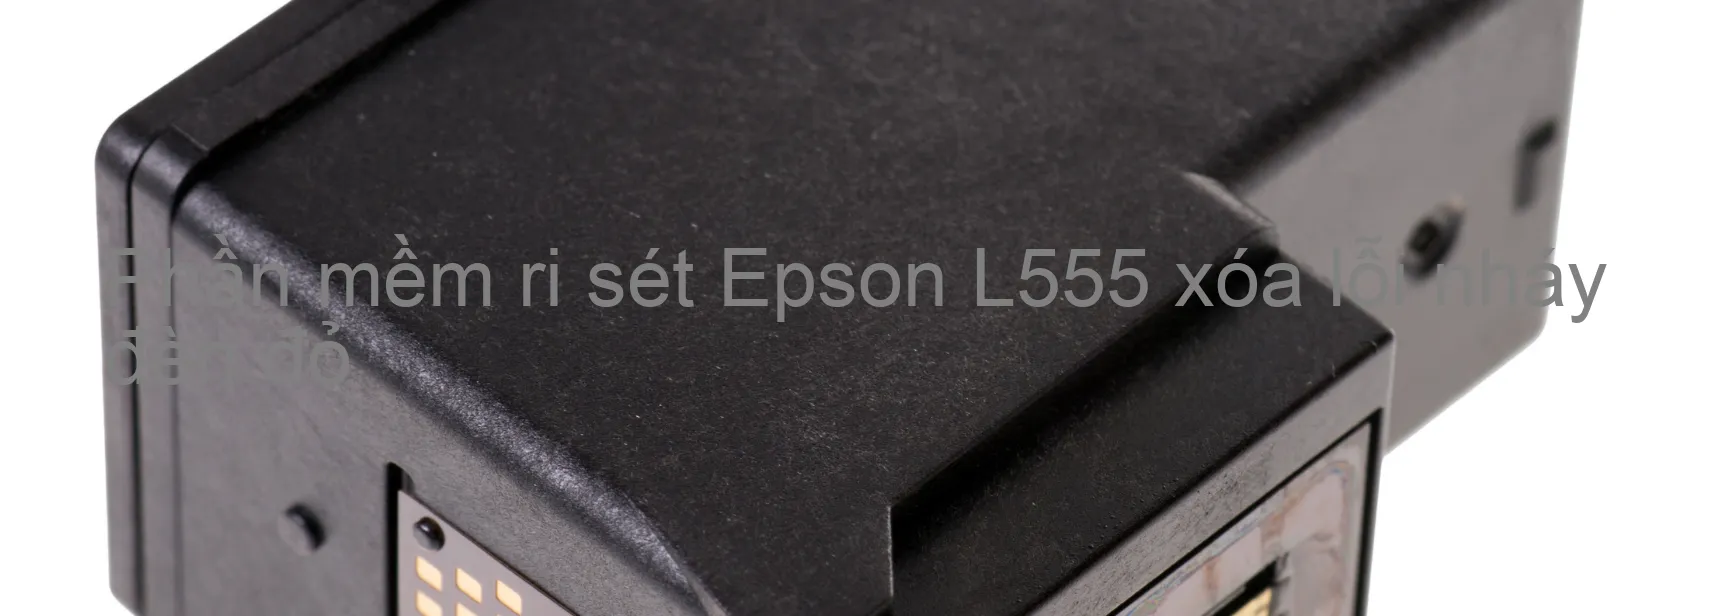 Phần mềm reset Epson L555 xóa lỗi nháy đèn đỏ